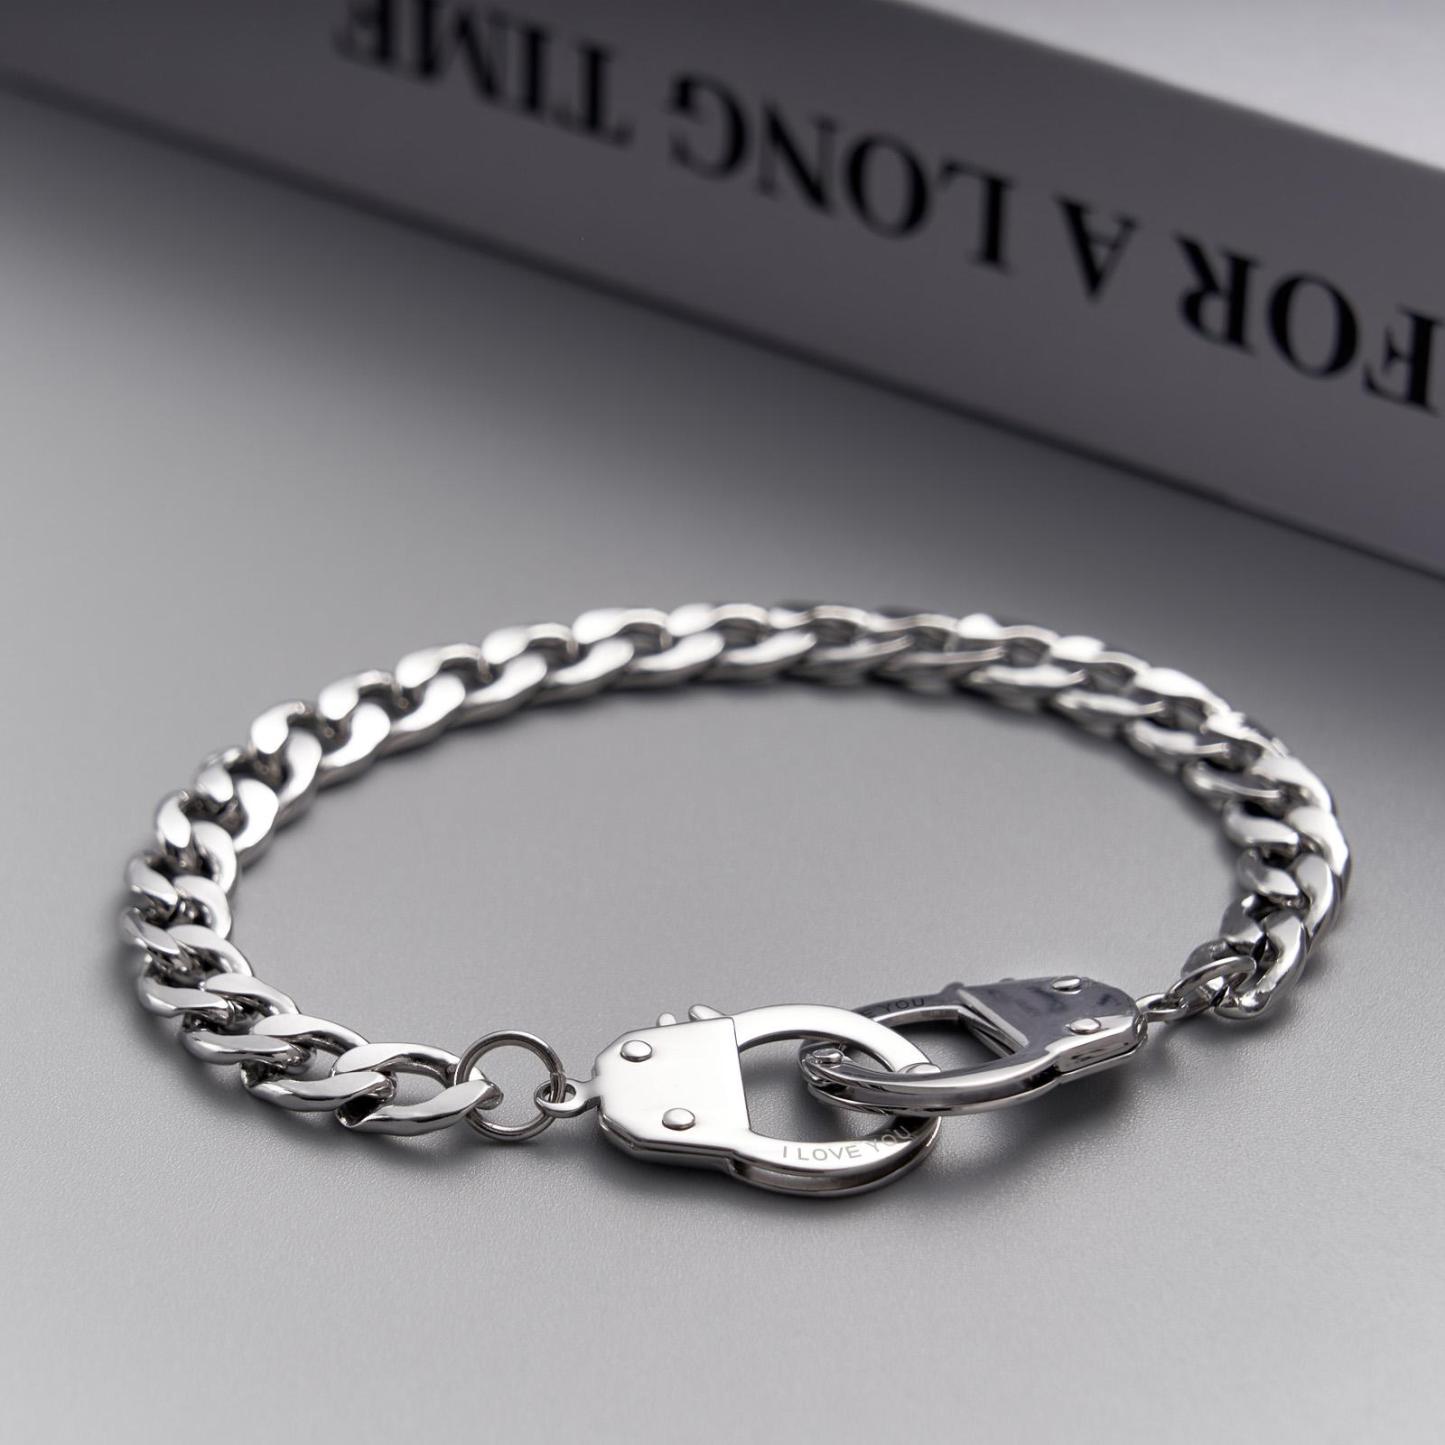 Handcuffs Engraved Bracelet Personalized Unique Shackle Chain Bracelet For Couples - soufeelus